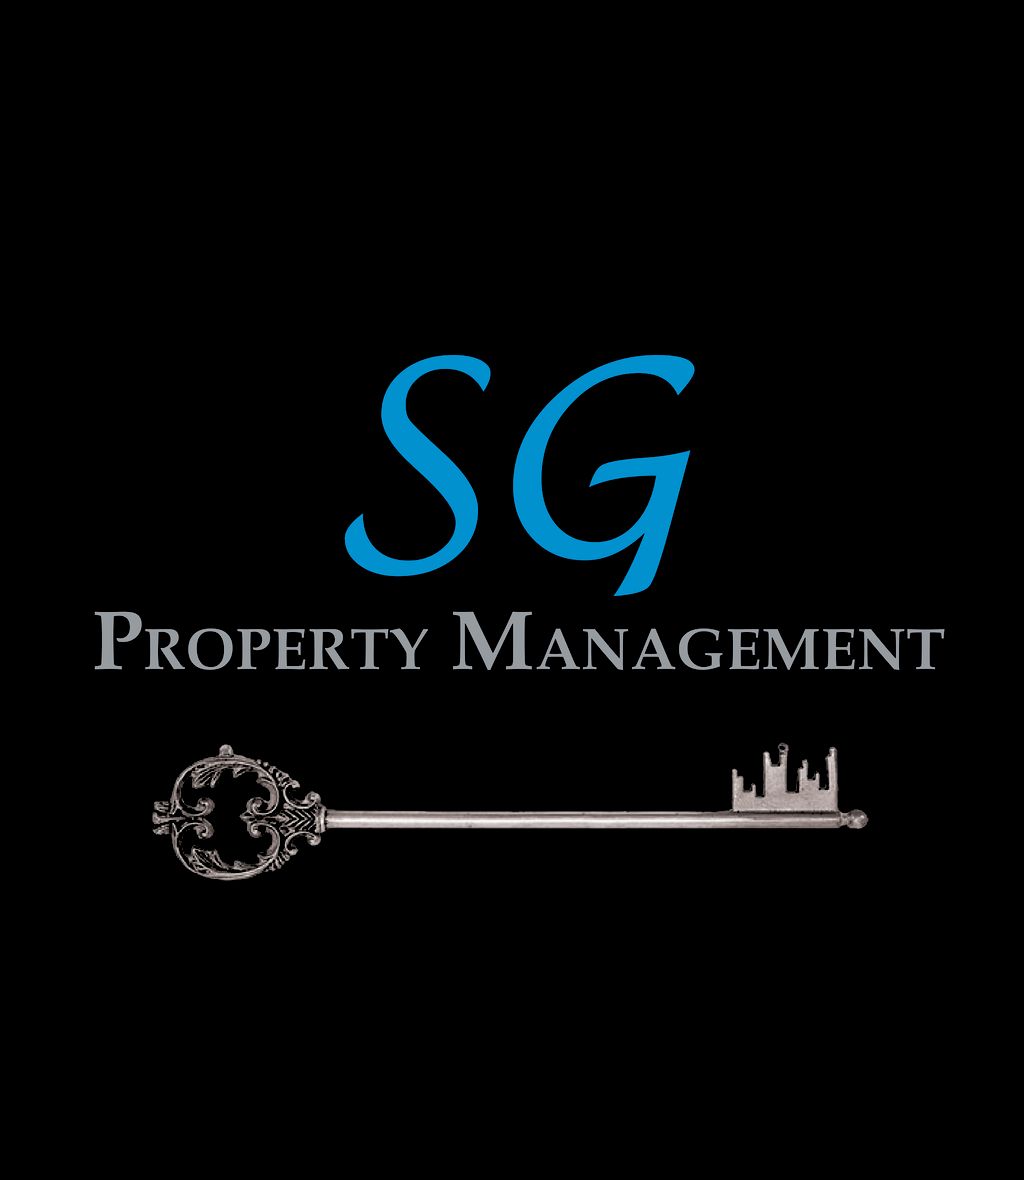 SG Property Management